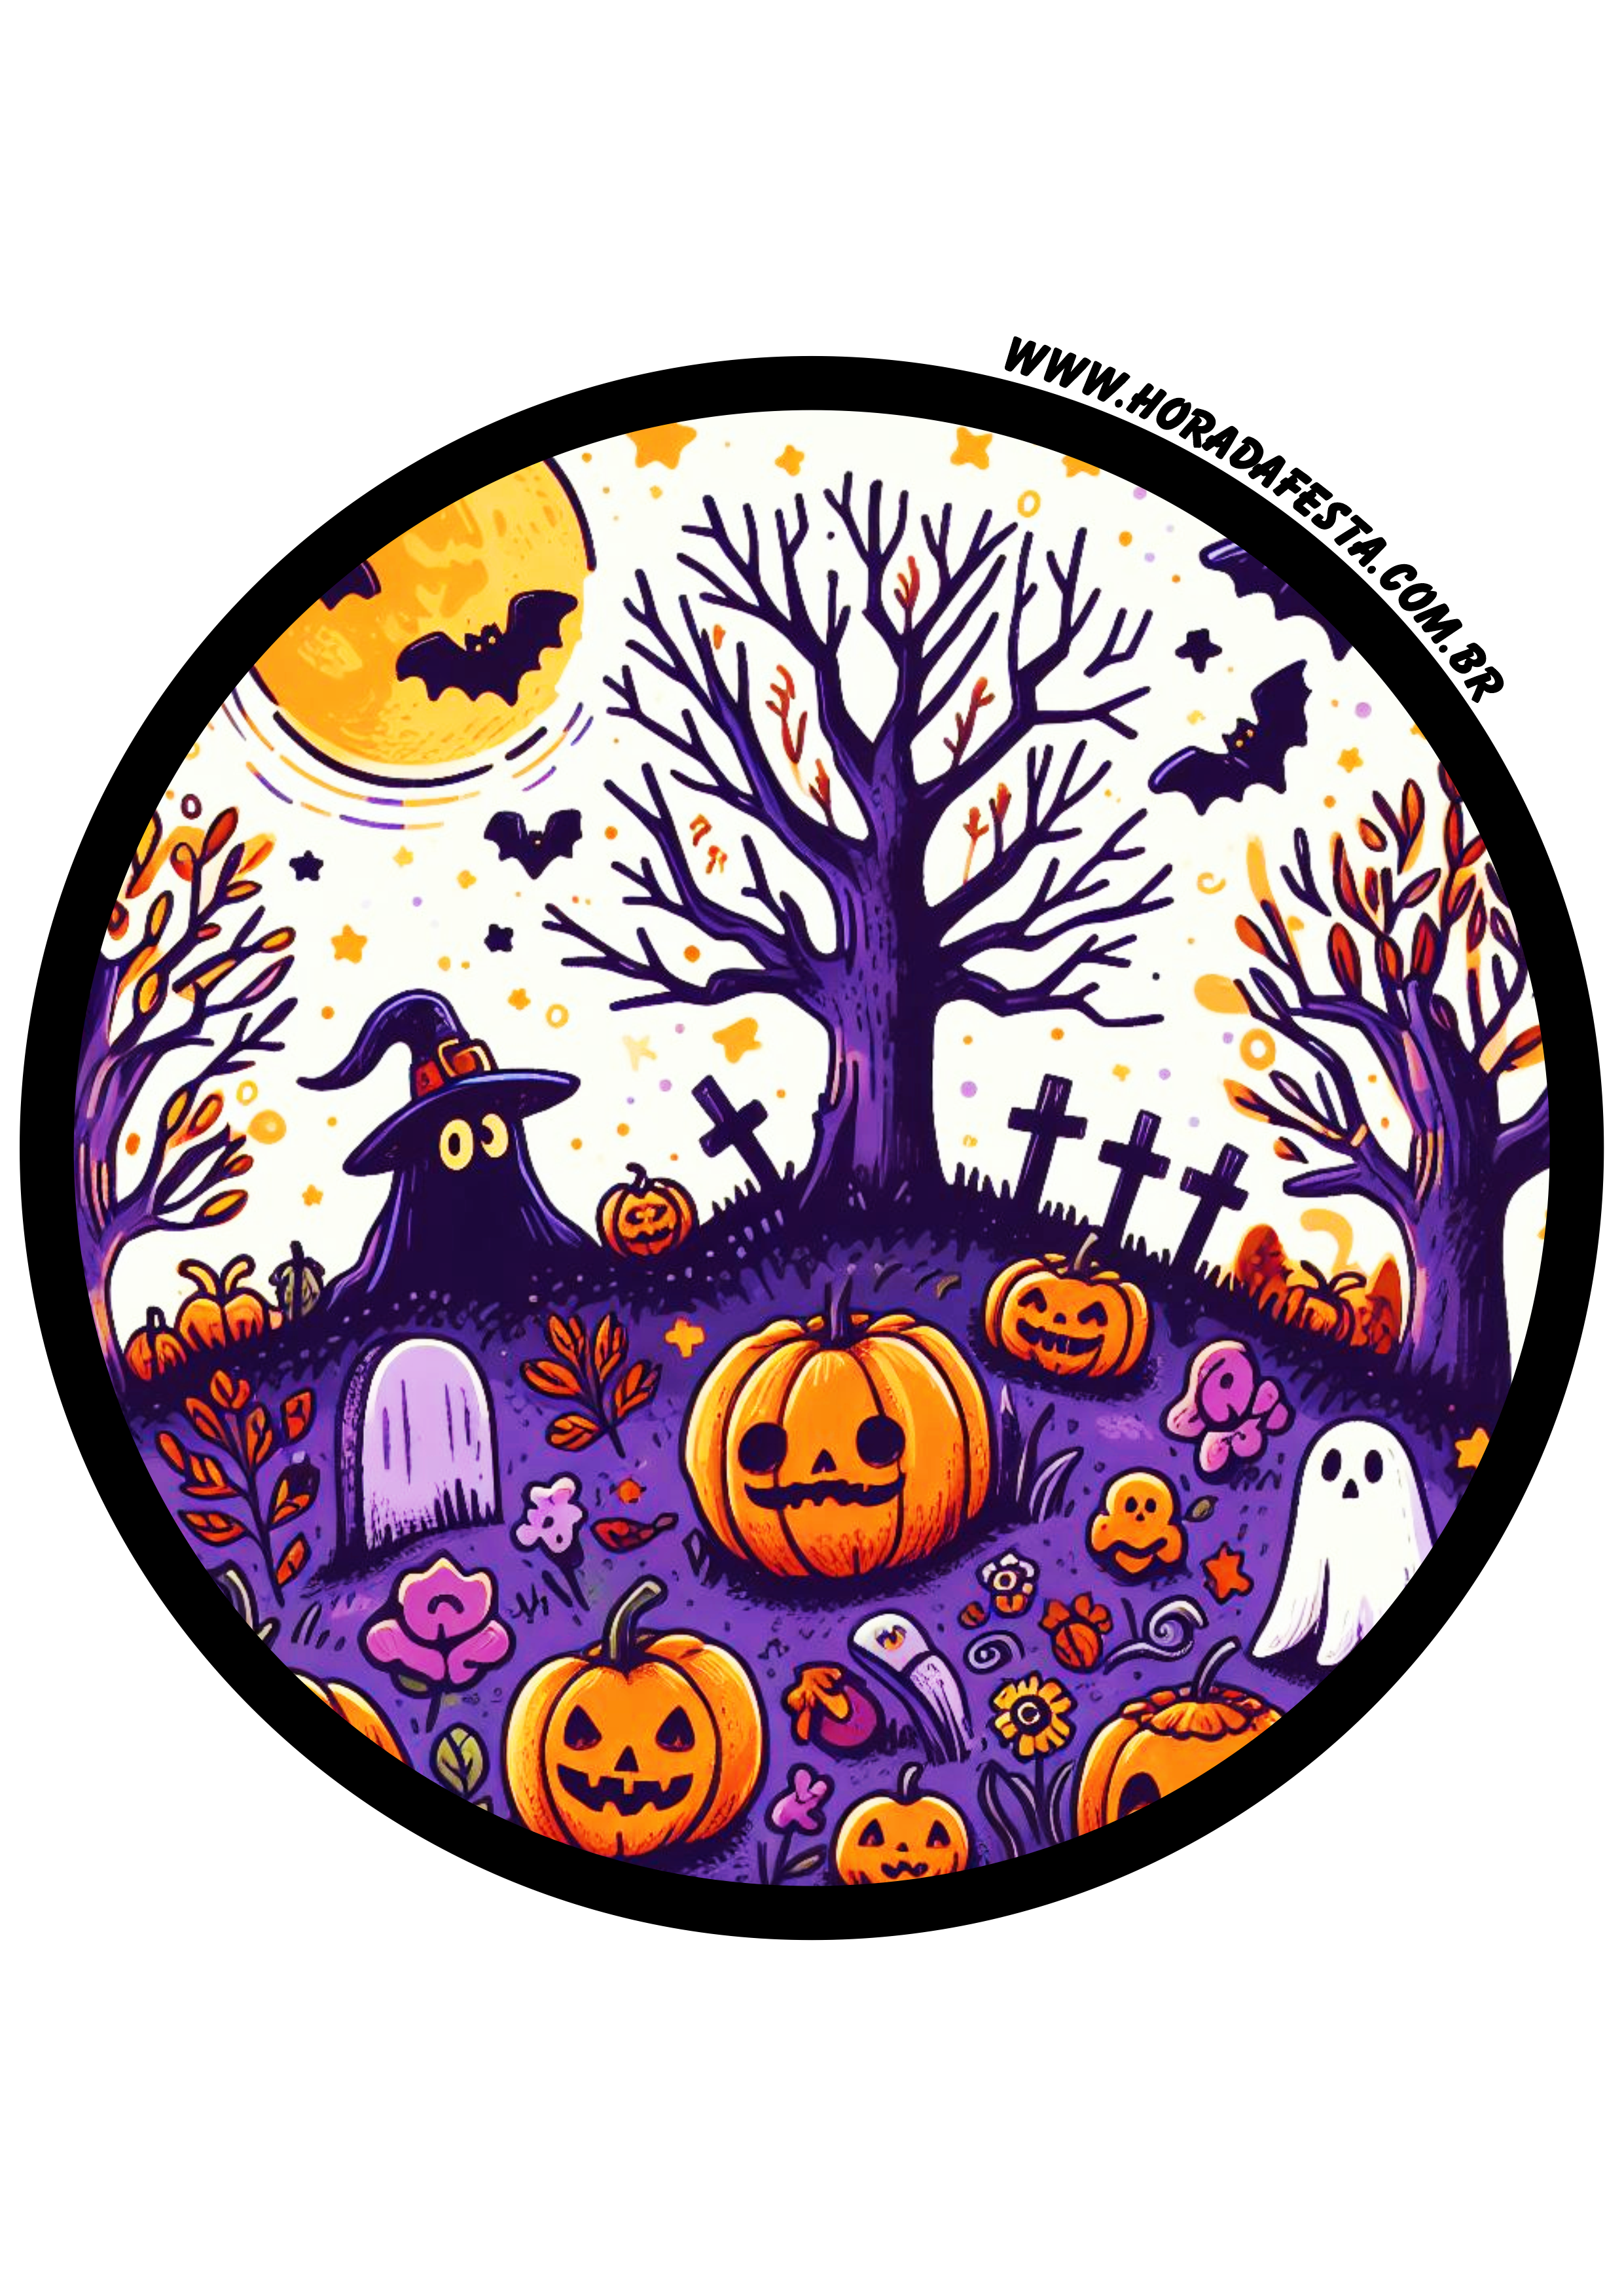 Halloween adesivo redondo tag sticker painel decoração dia das bruxas 30 de outubro artigos de papelaria png